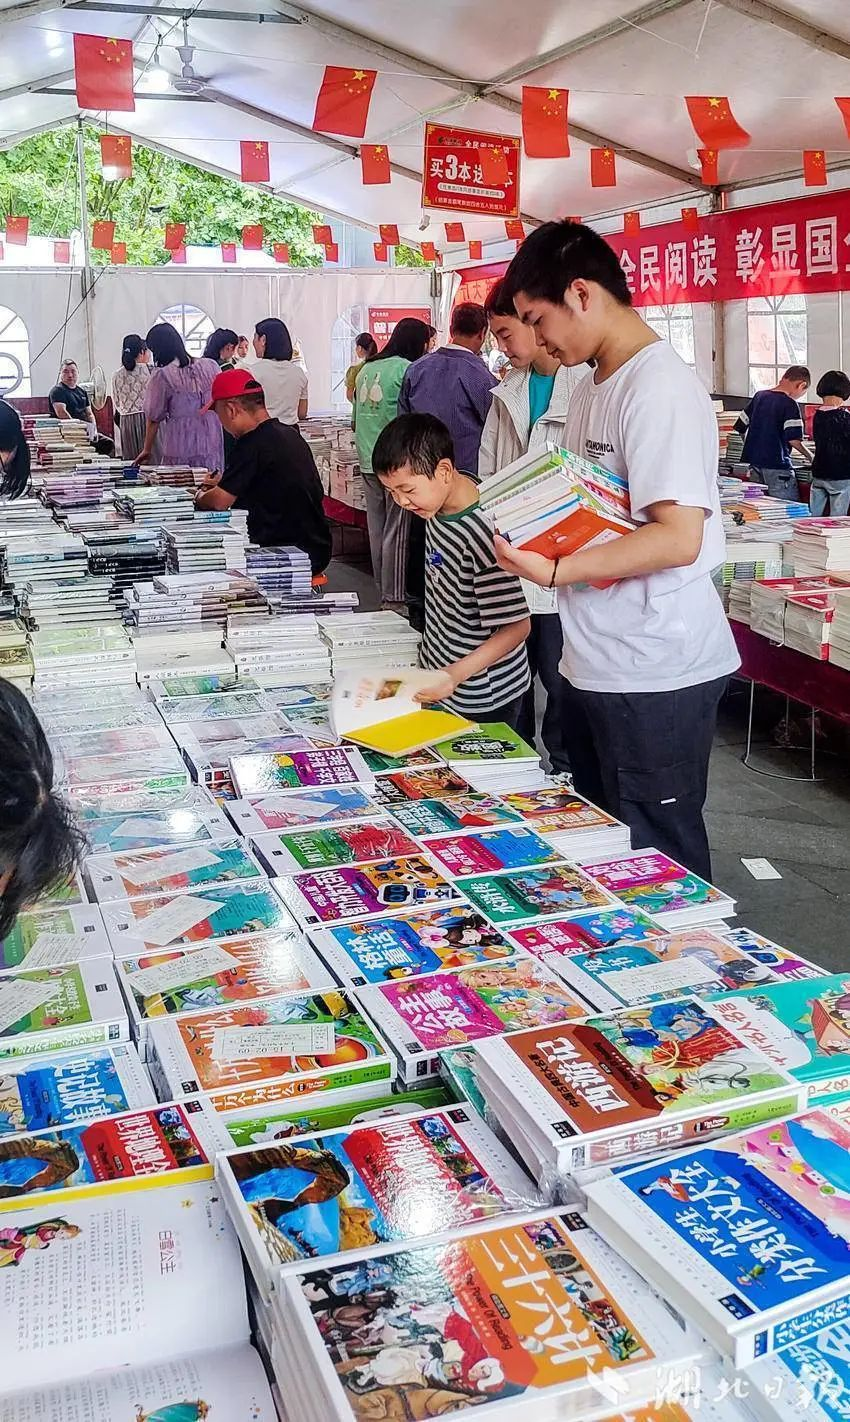 利川举办“文明新利川·书香润凉城”的全民阅读图书惠民活动